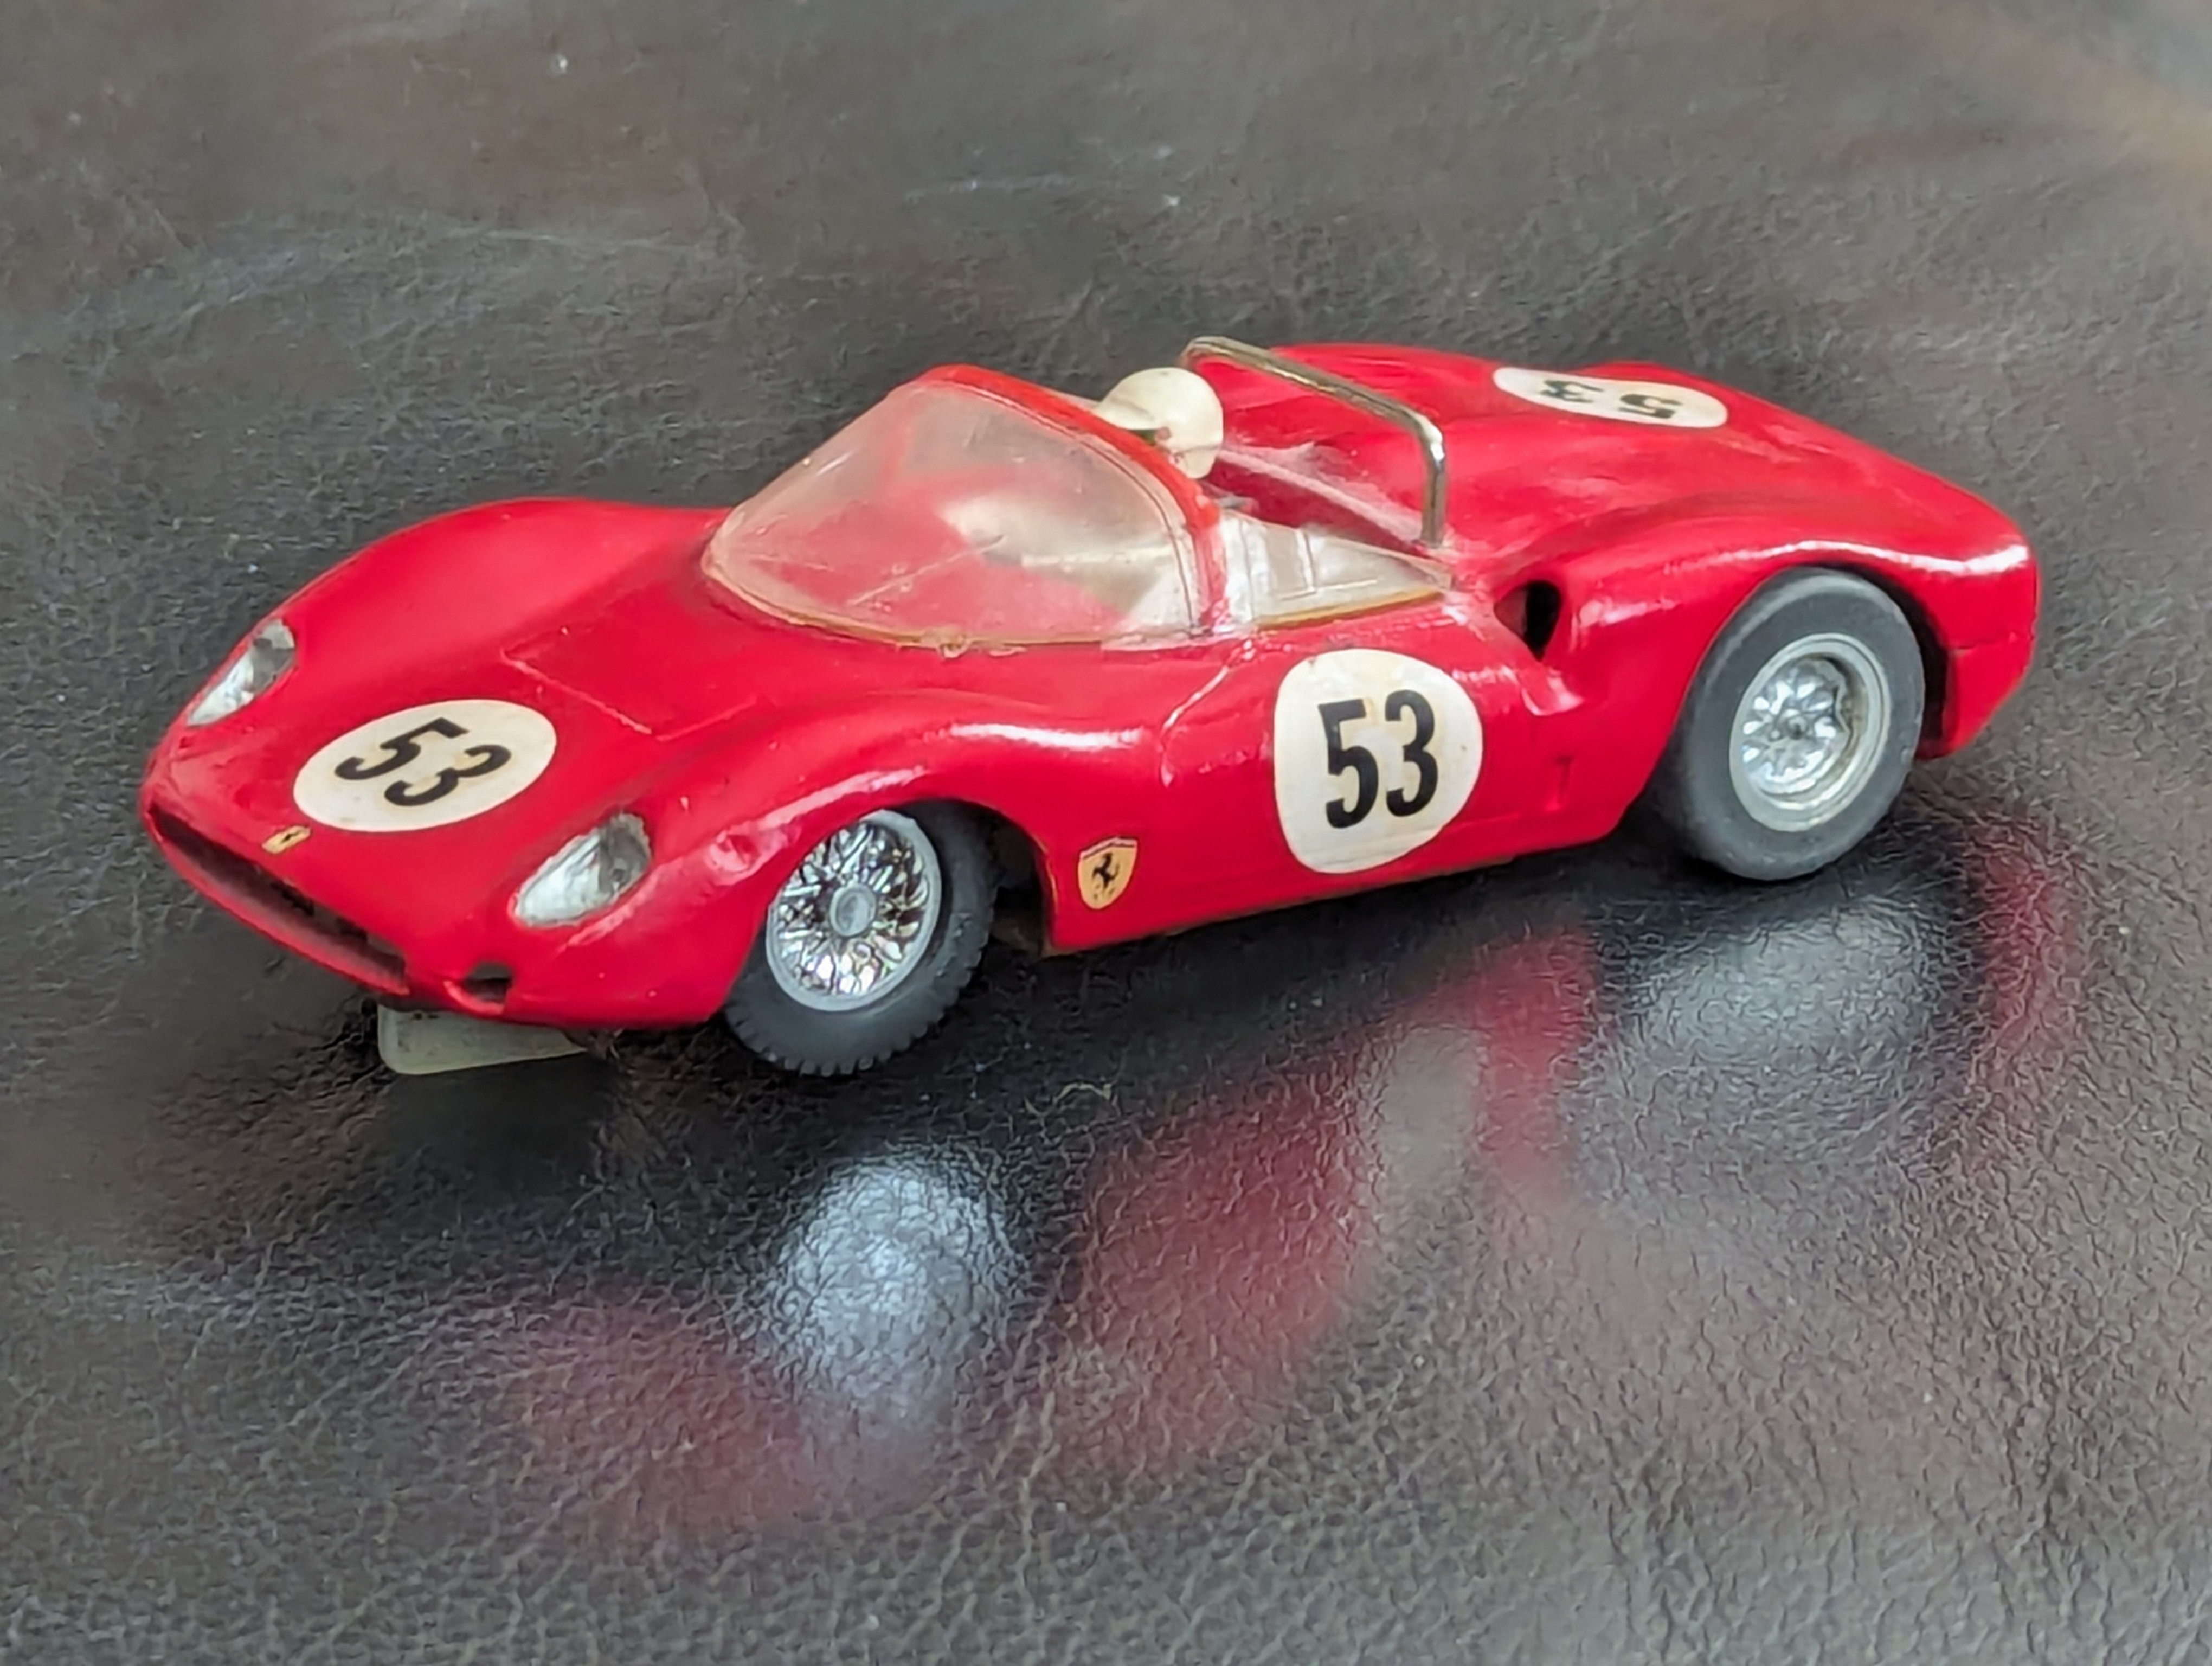 1965 Ferrari Dino Roadster - 2nd Issue - Racer